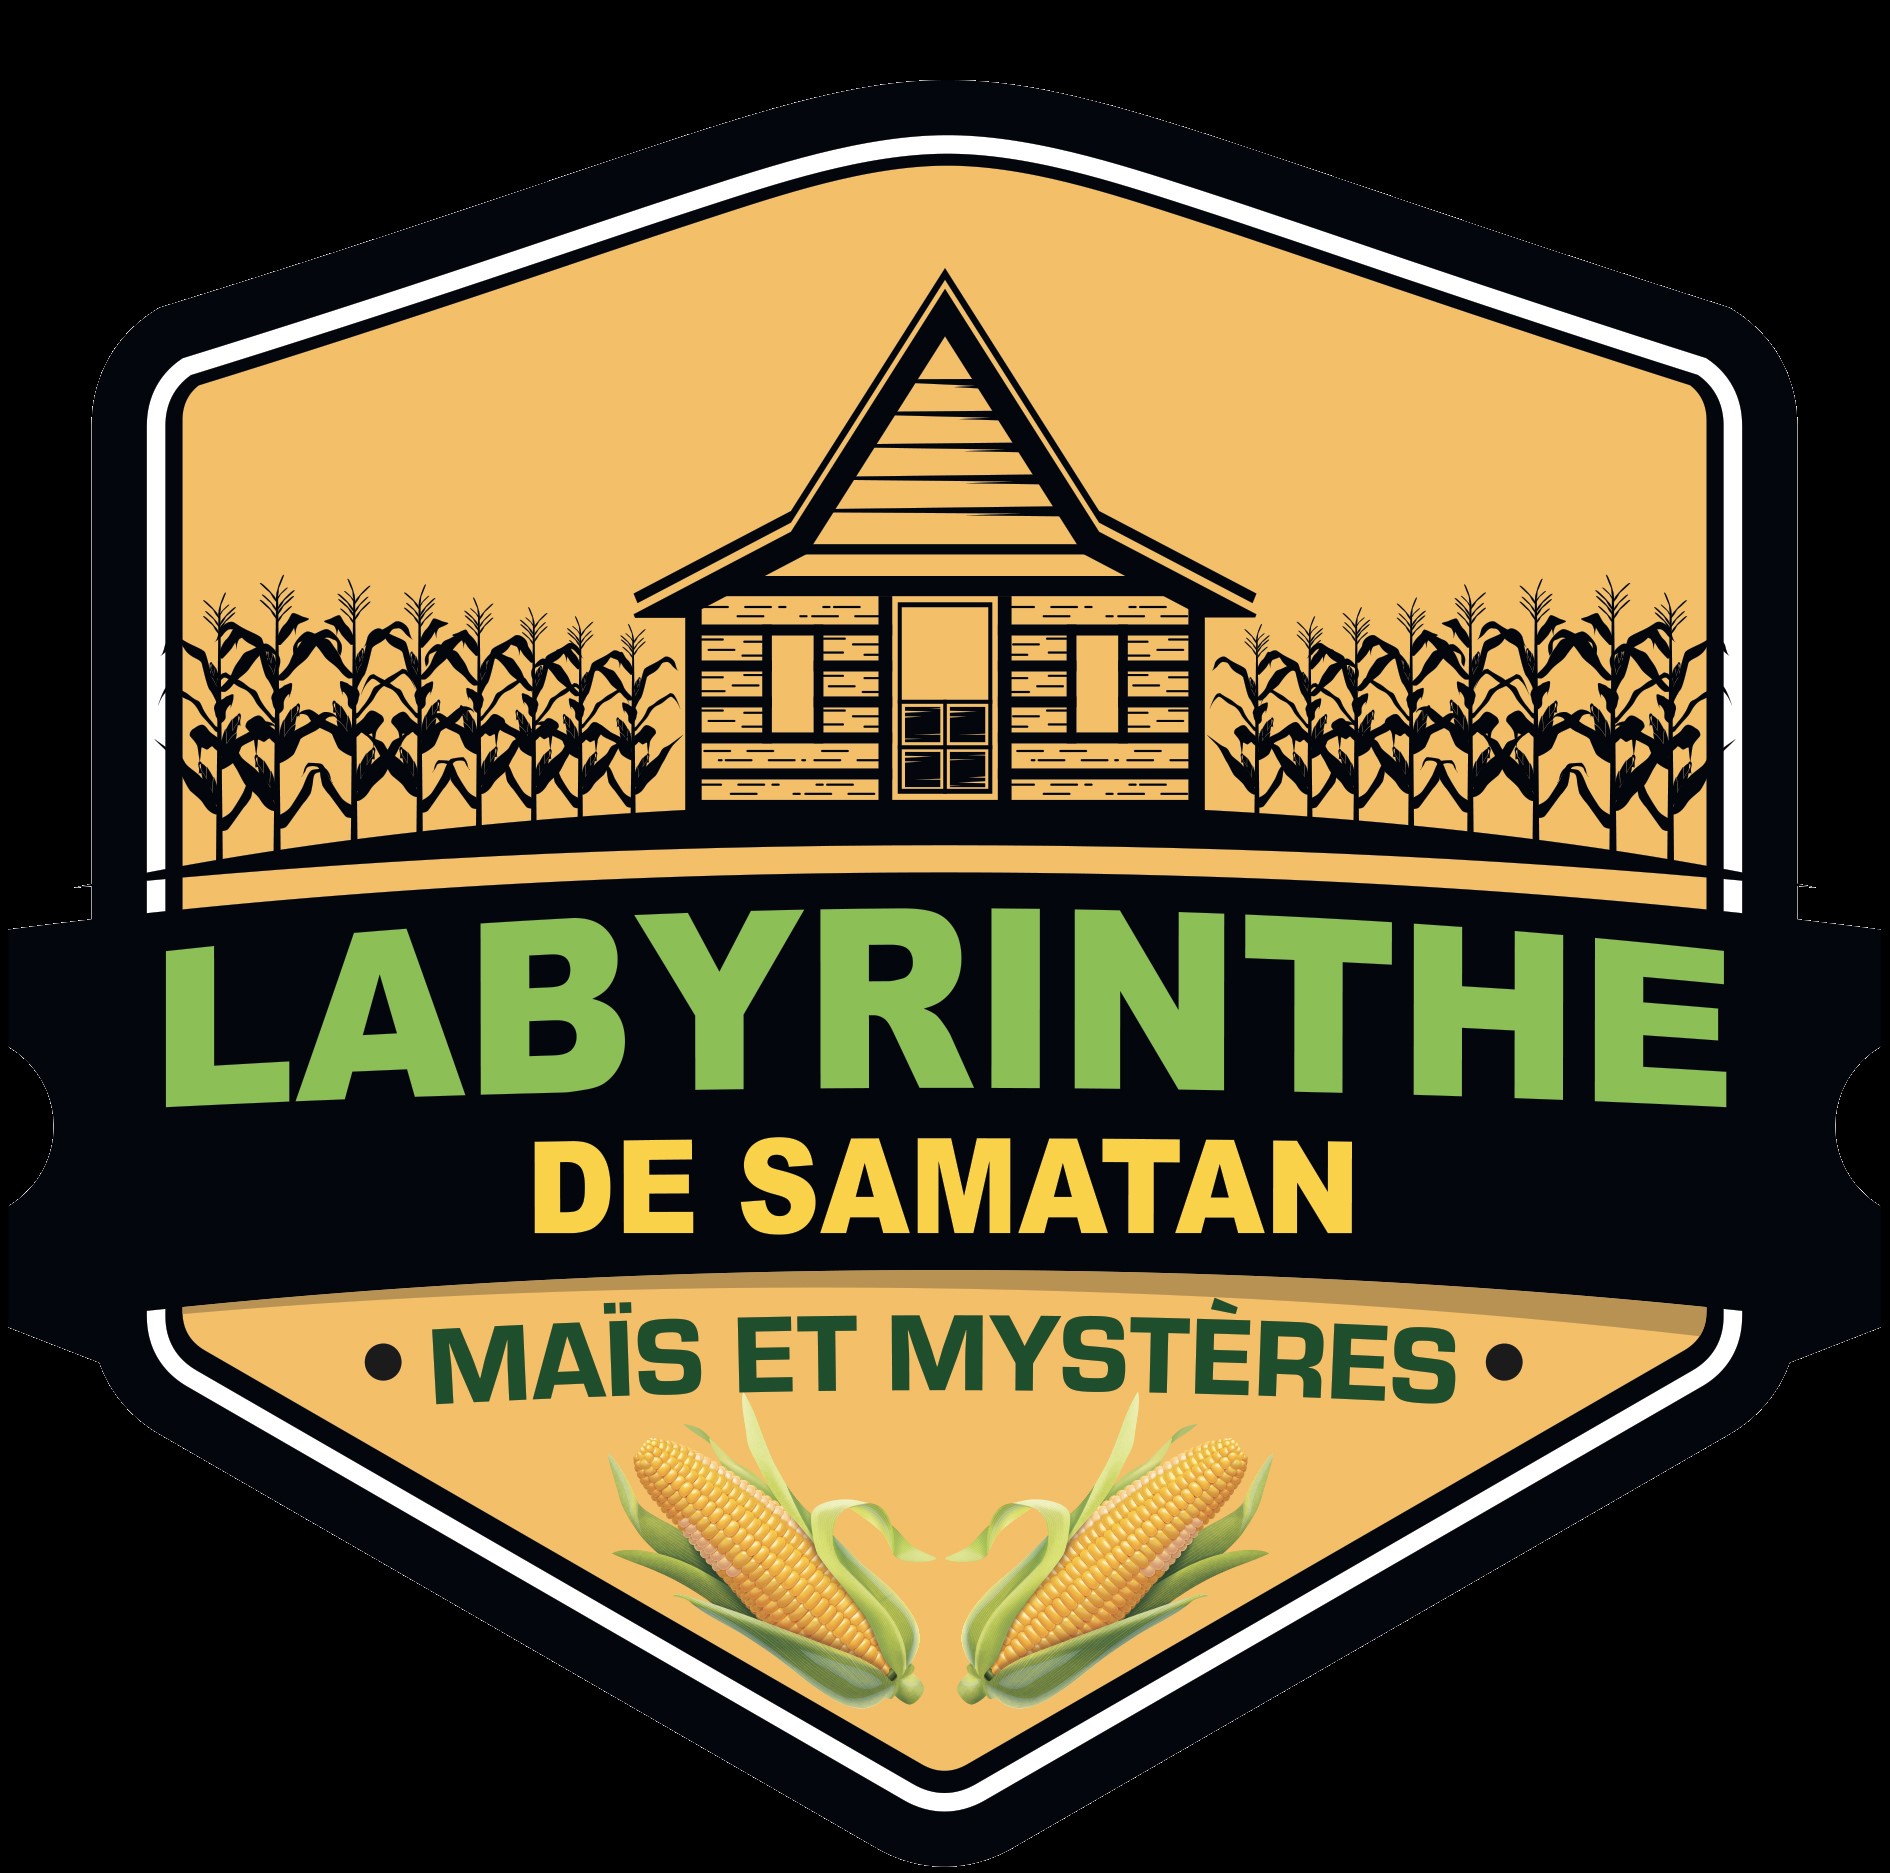 LABYRINTHE DE SAMATAN